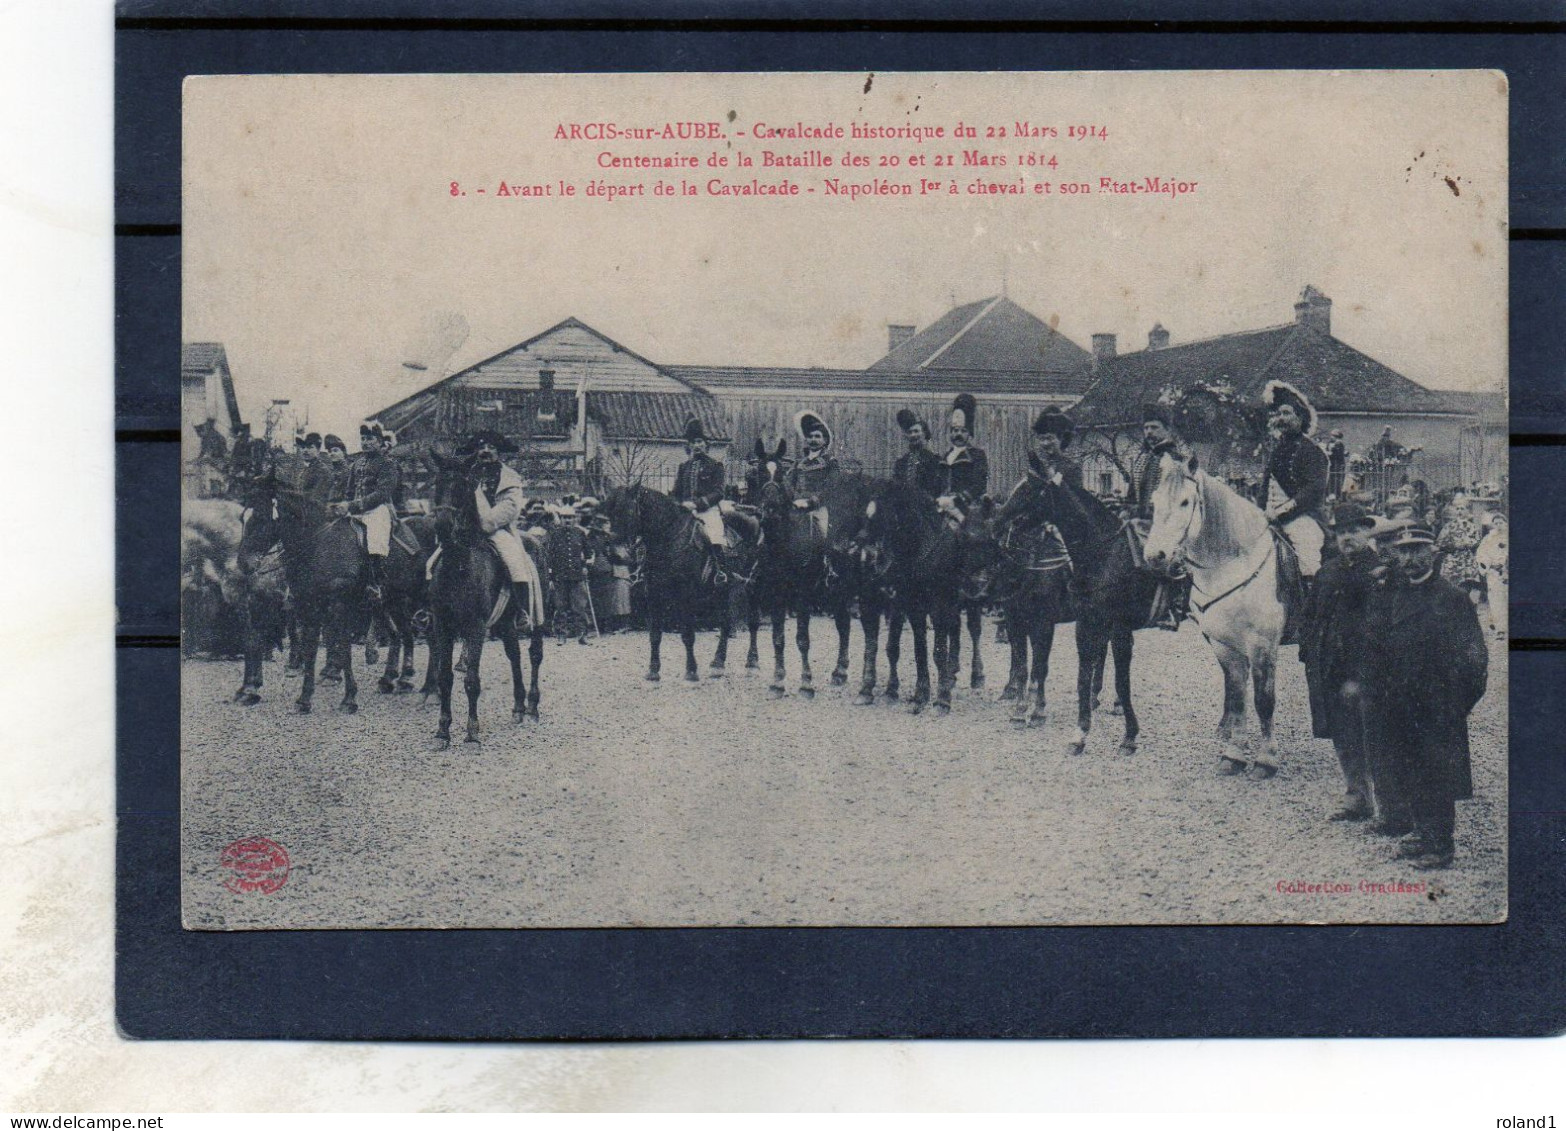 Arcis Sur Aube - Cavalcade Historique Du 22 Mars 1914.( Coll. Gradassi ). - Arcis Sur Aube